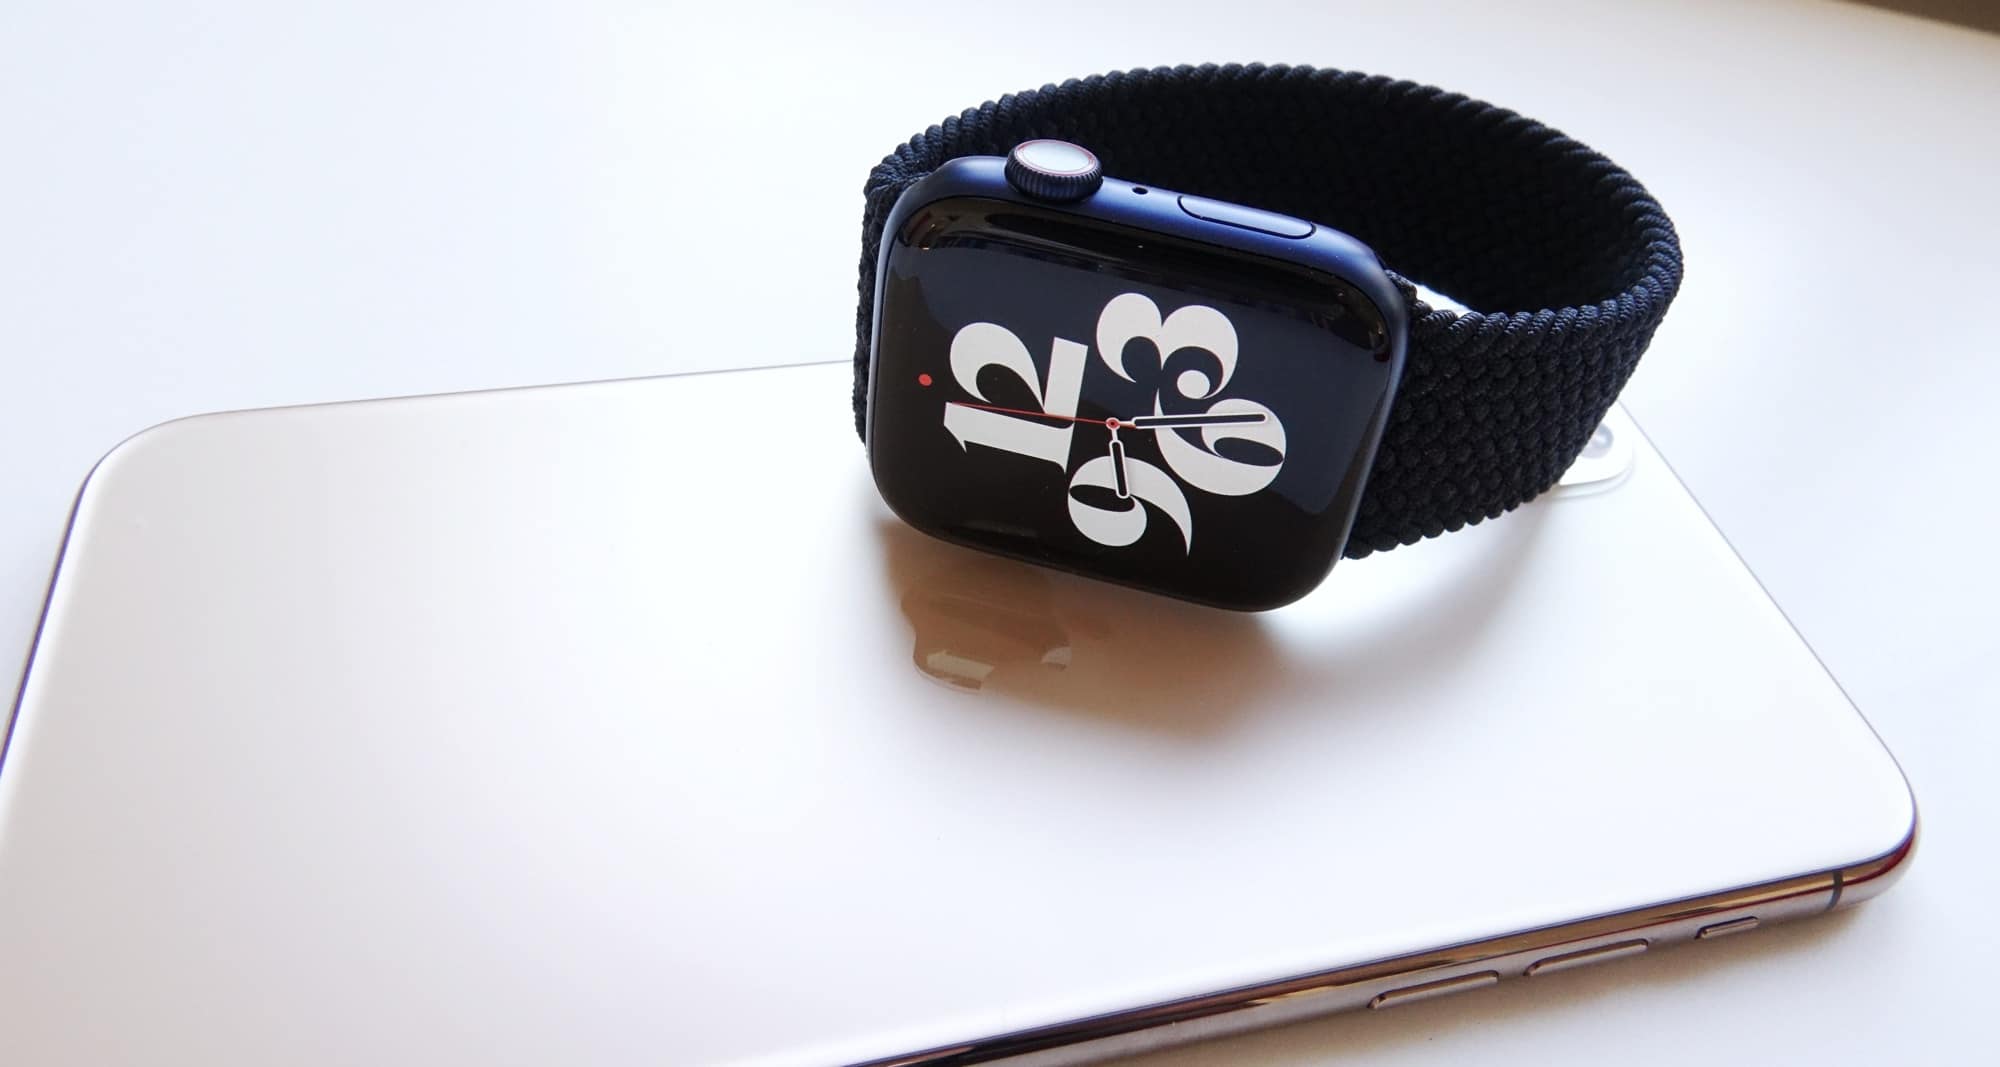 Apple Watch Series 6 reviewed